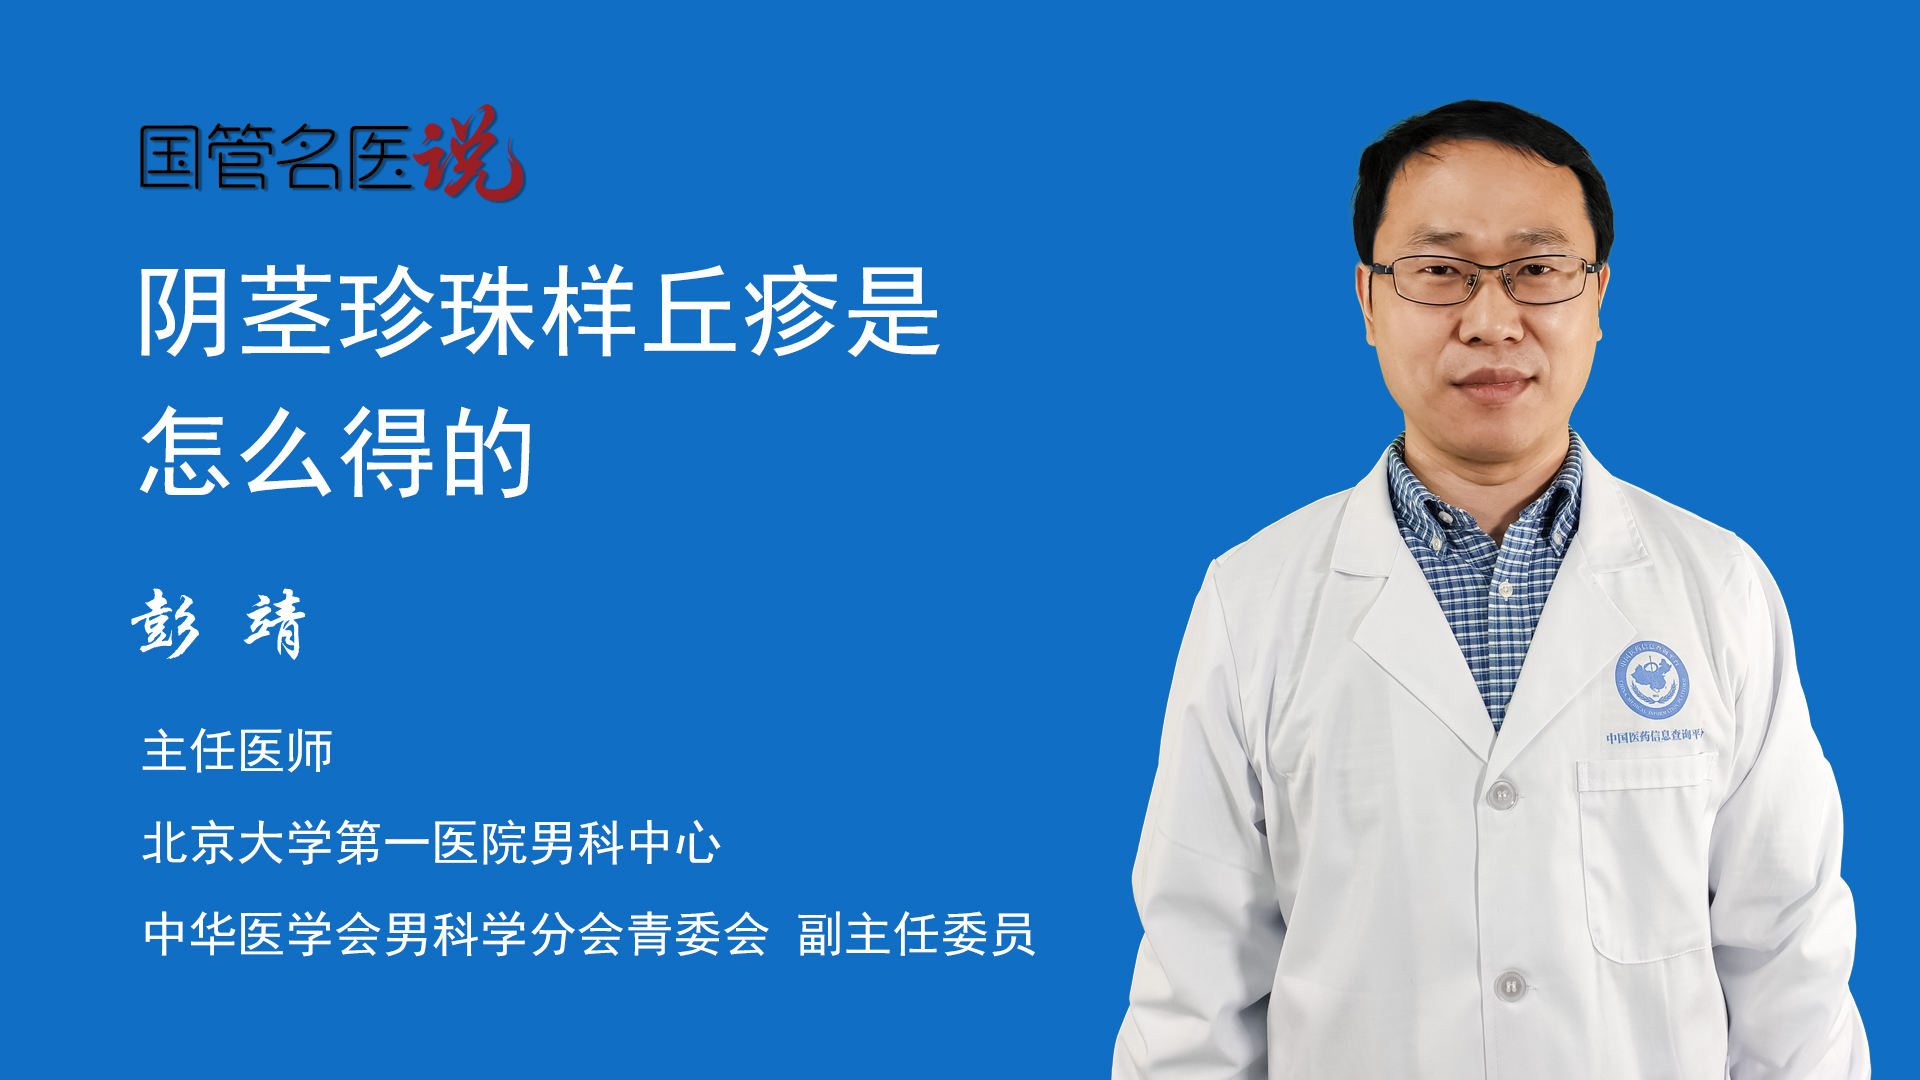 阴茎冠状沟具体是指哪个位置_张国喜医生视频讲解泌尿外科疾病-快速问医生